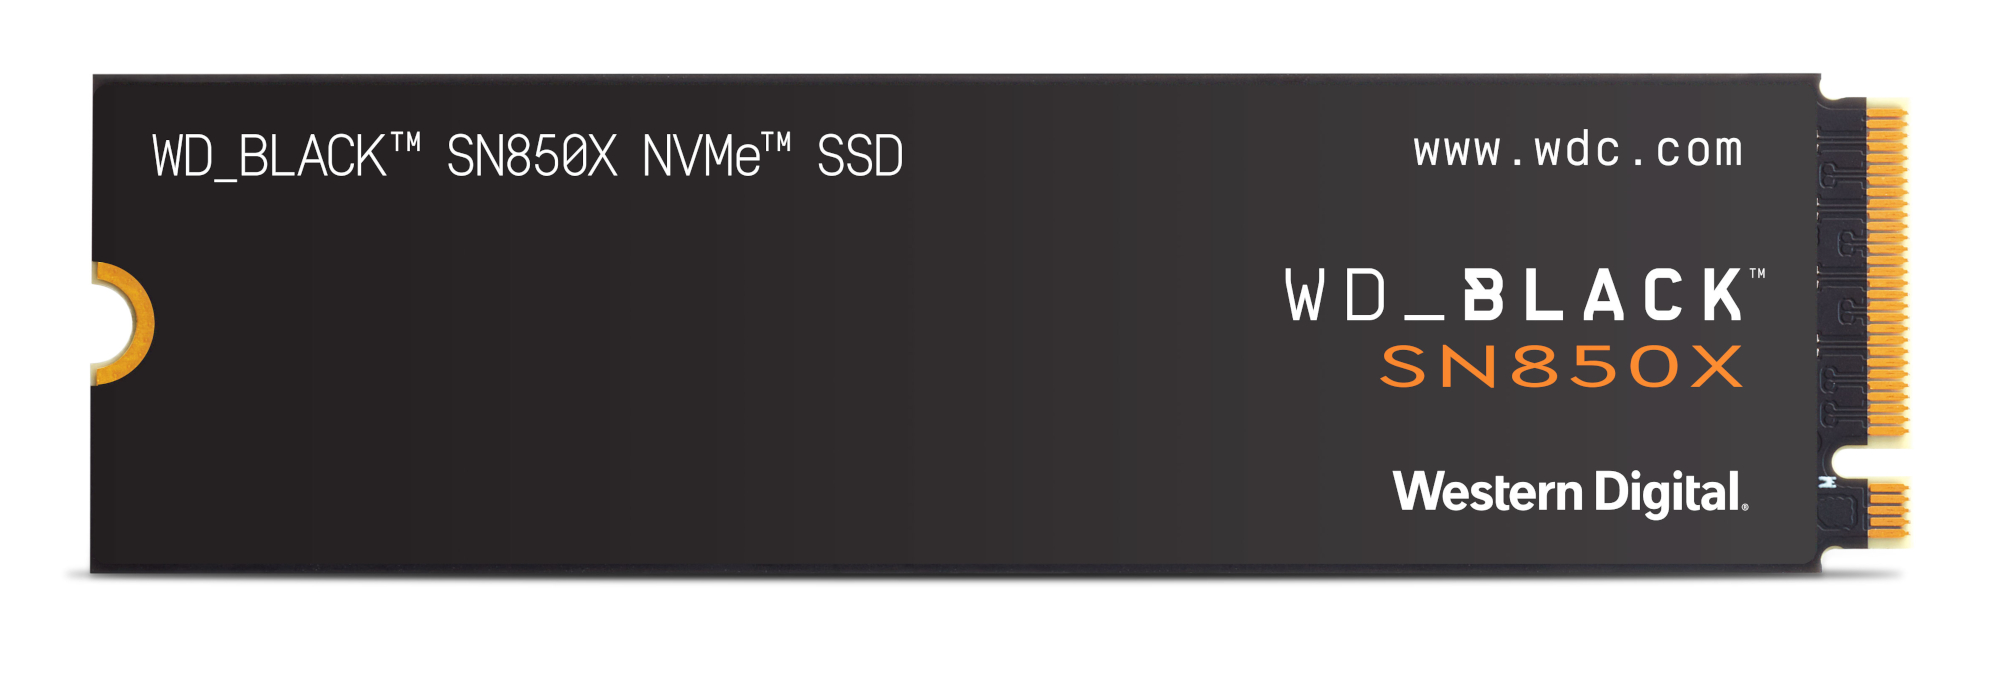 WD Black SN850X - Nejlepší PCIE 4.0 SSD